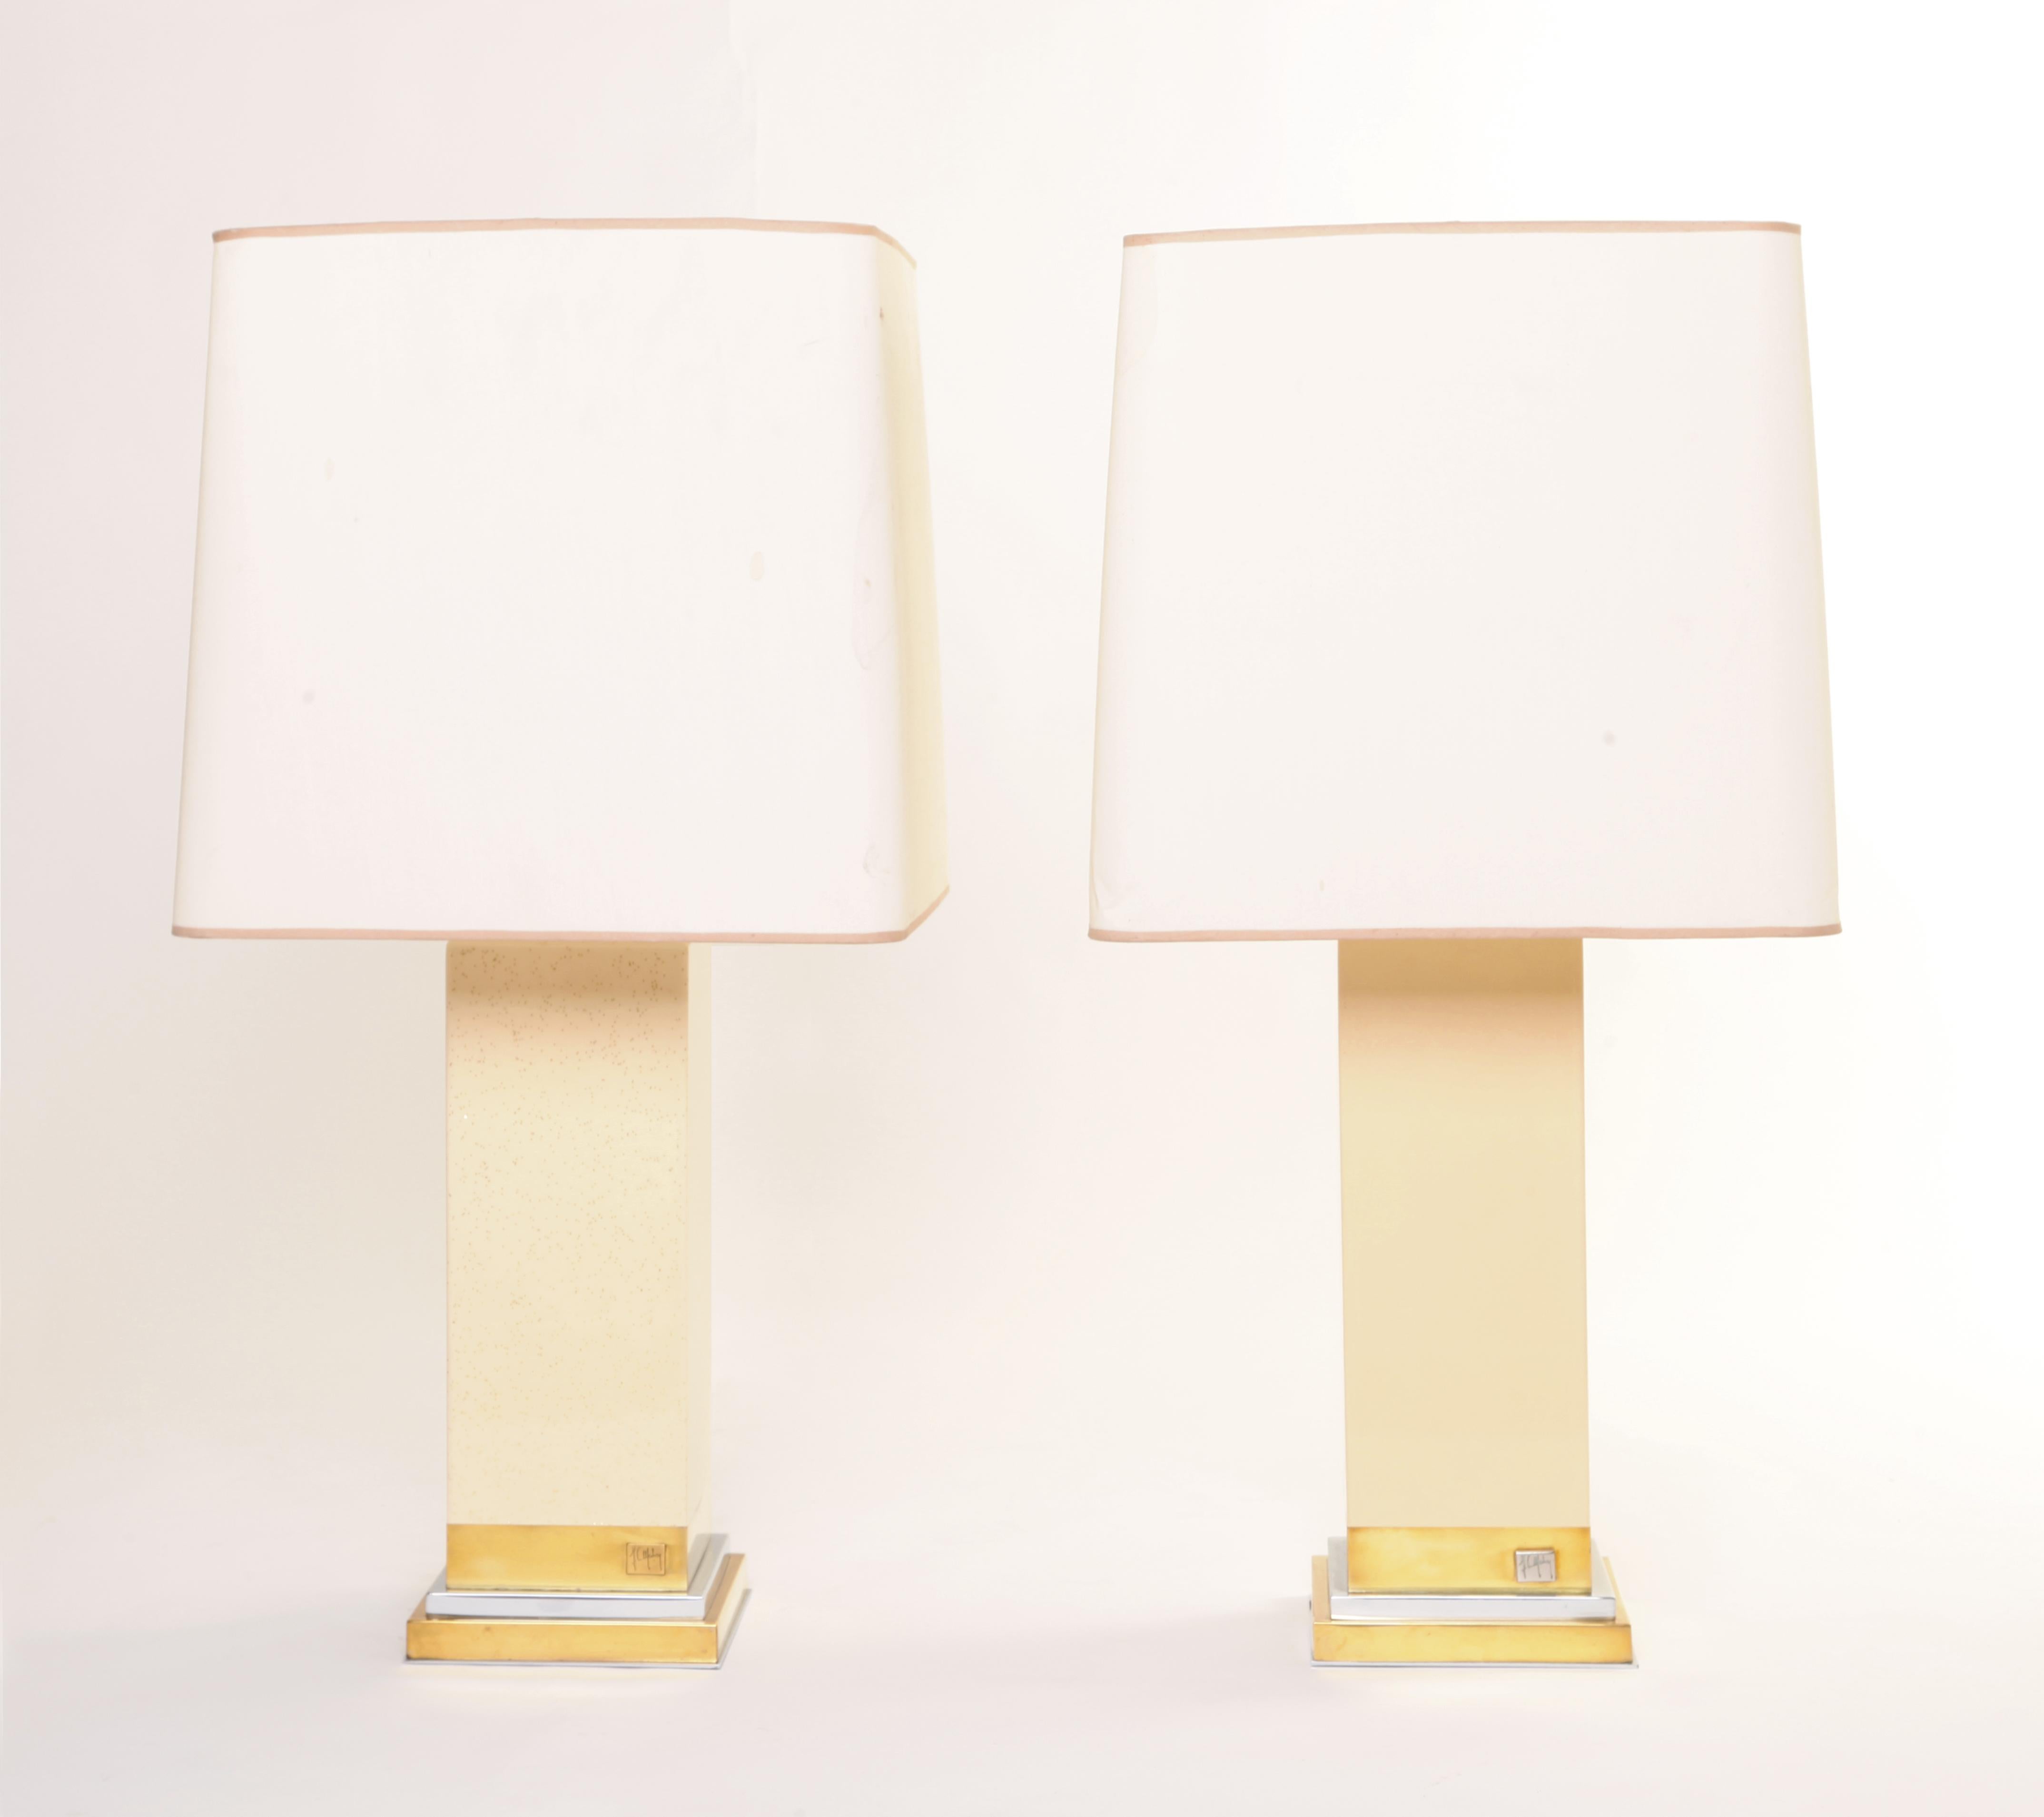 Une quasi-paire de lampes signées par Jean Claude Mahey. Les deux reposent sur un socle en laiton et chrome, et tandis que l'un est laqué en crème unie, l'autre est laqué en crème pailletée d'or. Les deux lampes sont accompagnées d'un abat-jour en